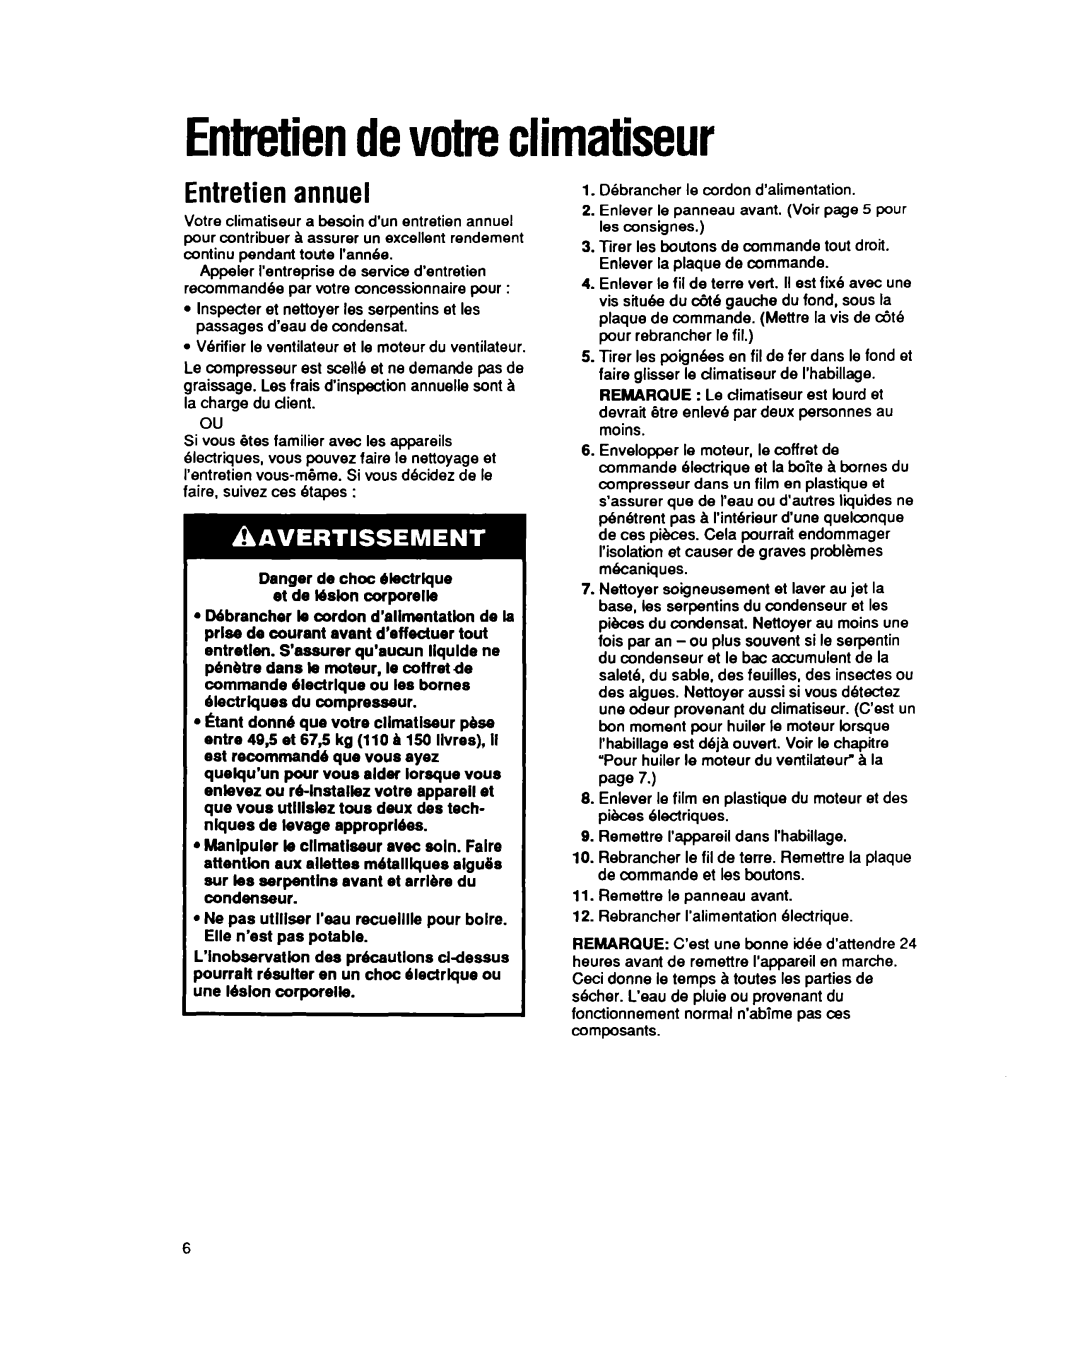 Whirlpool CA13WQ4 manual Entretiendevotreclimatiseur, Entretienannuel 